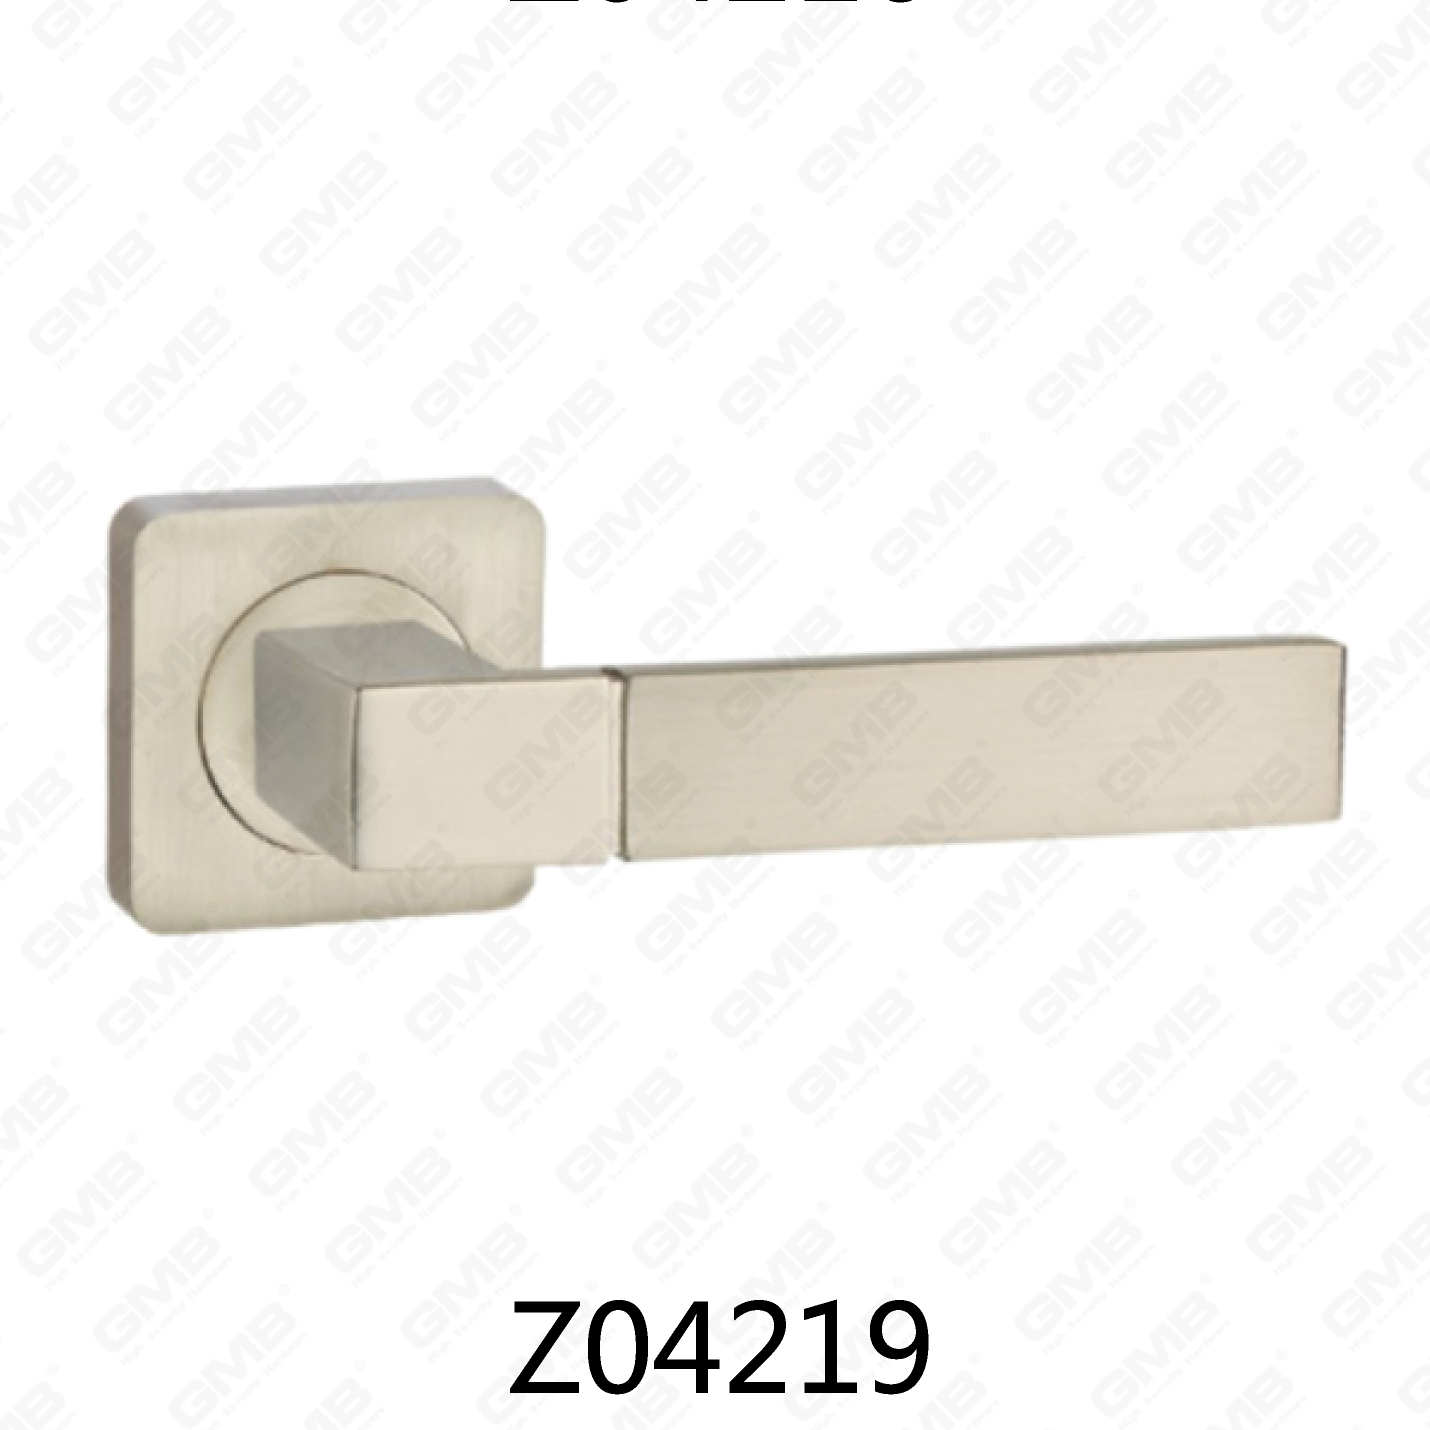 ידית דלת רוזטה מסגסוגת אבץ של Zamak עם רוזטה עגולה (Z04219)